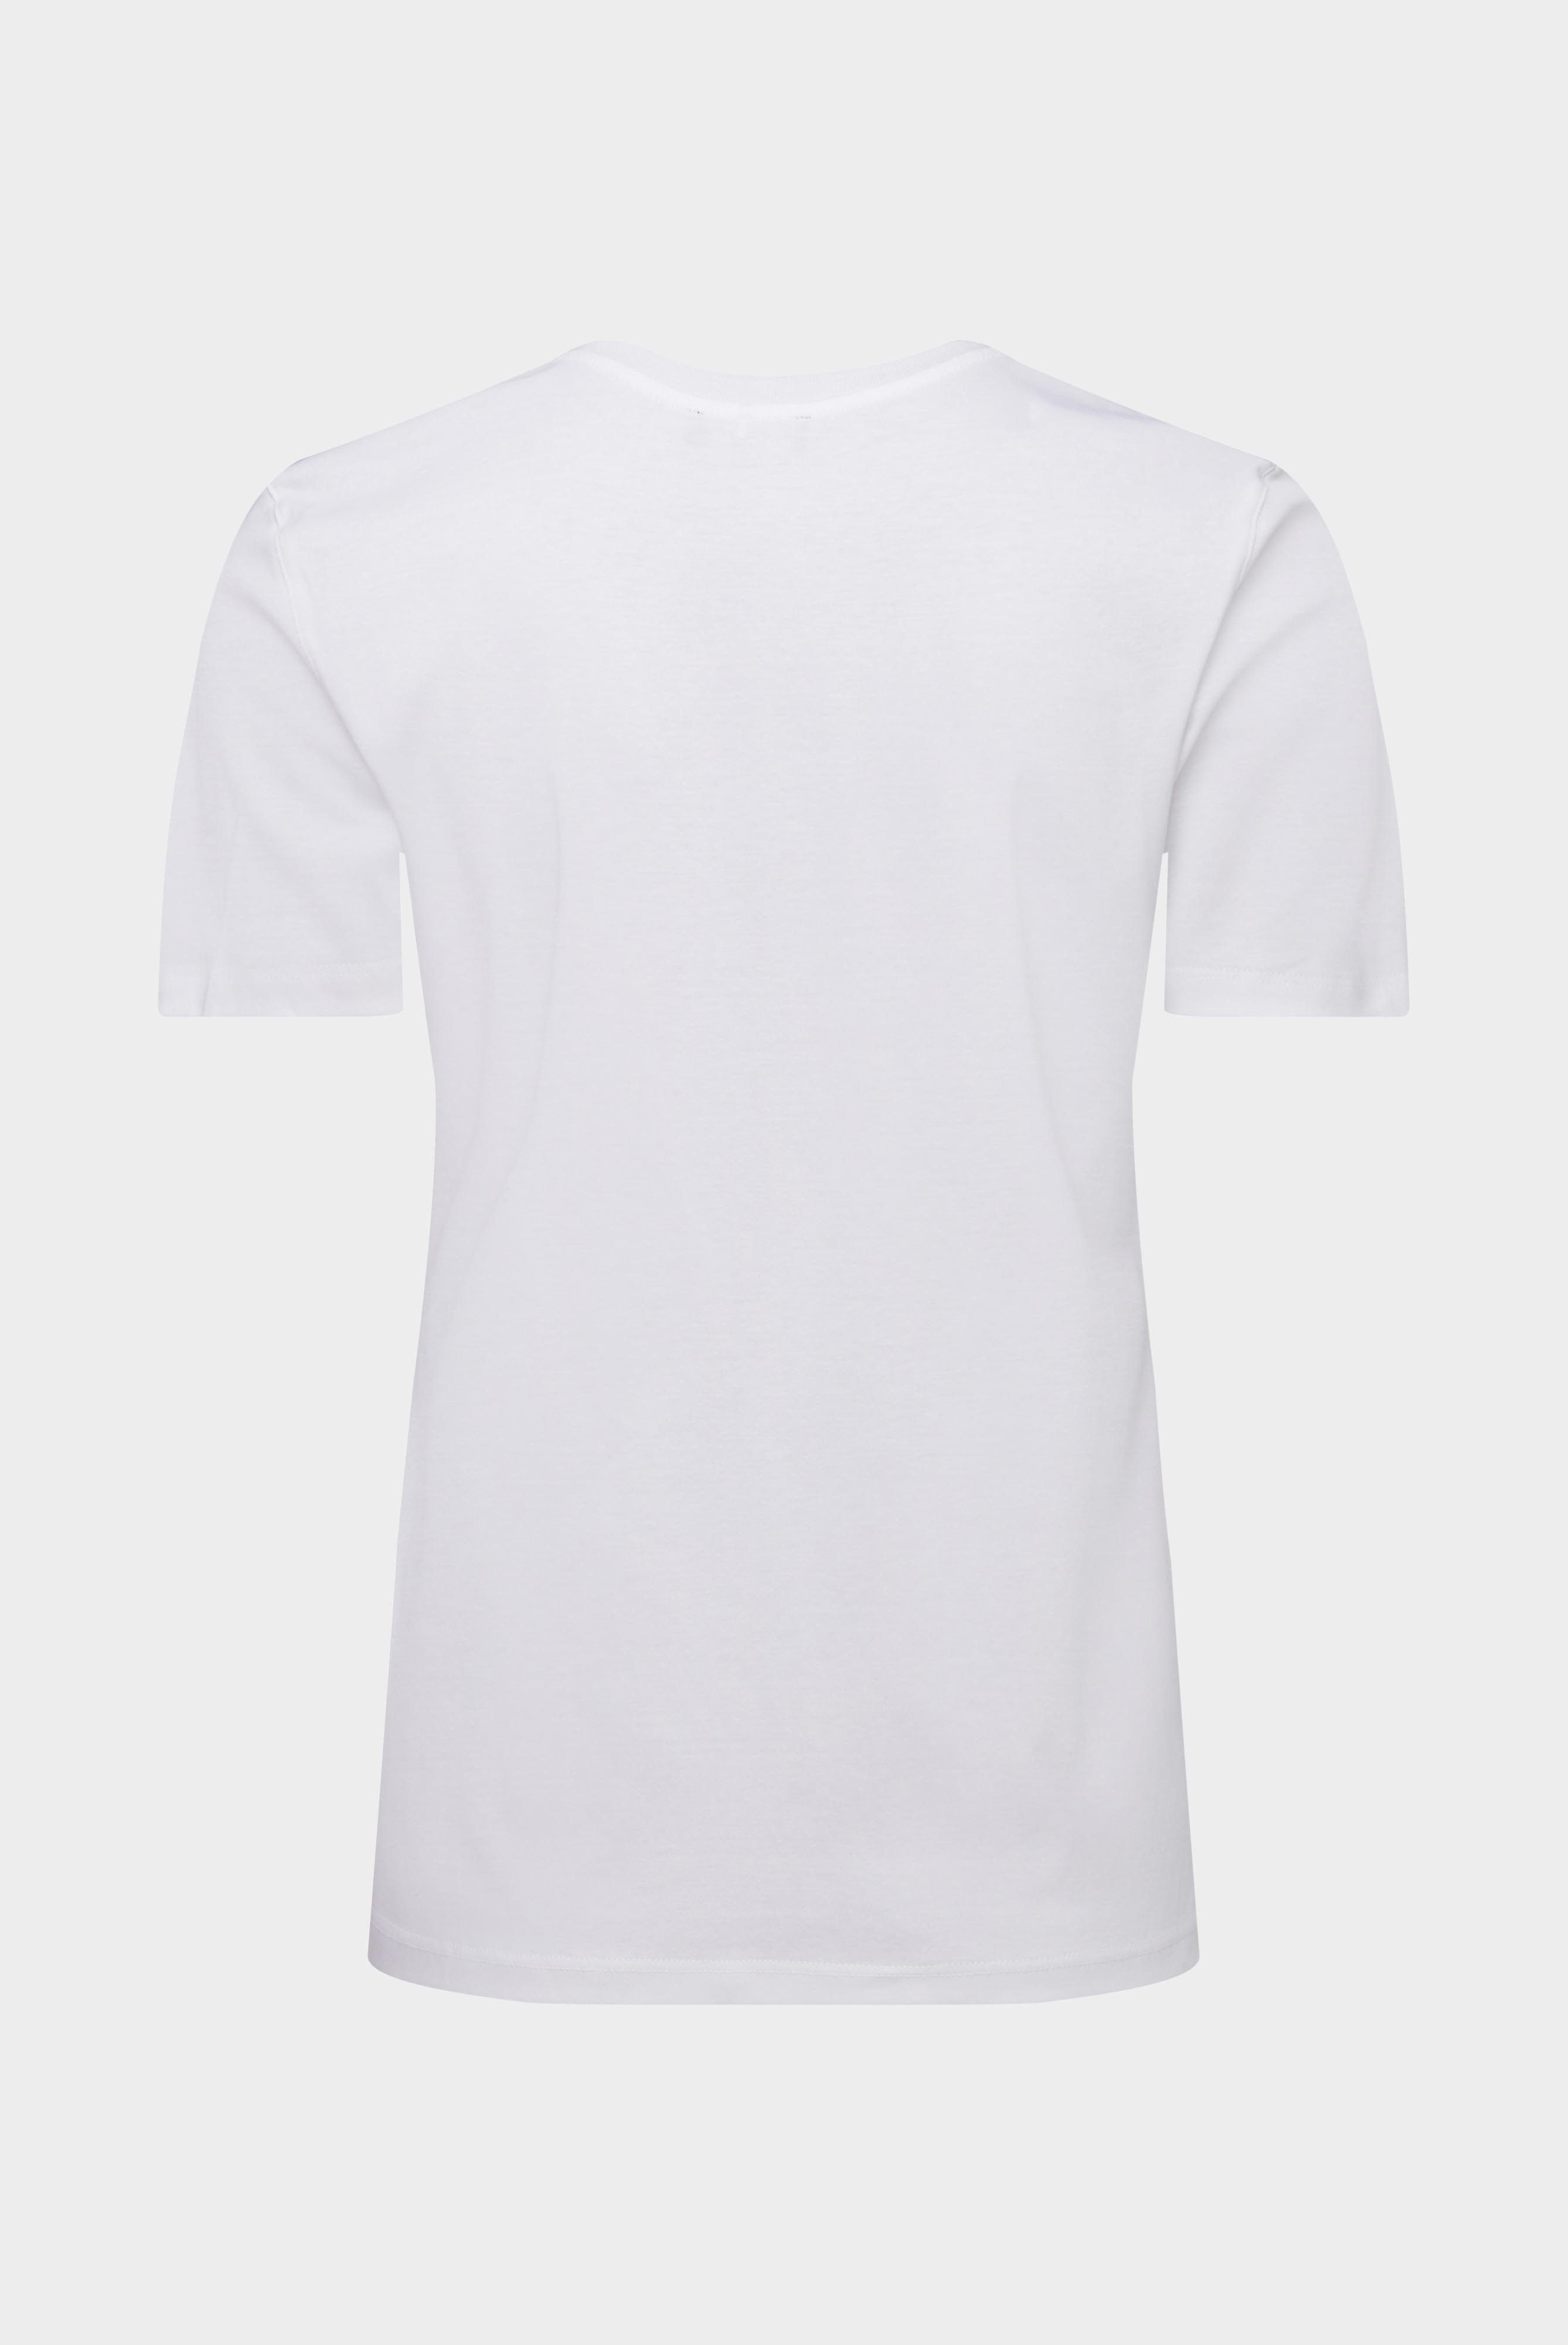 Tops & T-Shirts+Jersey T-Shirt+05.6384.18.180031.000.44